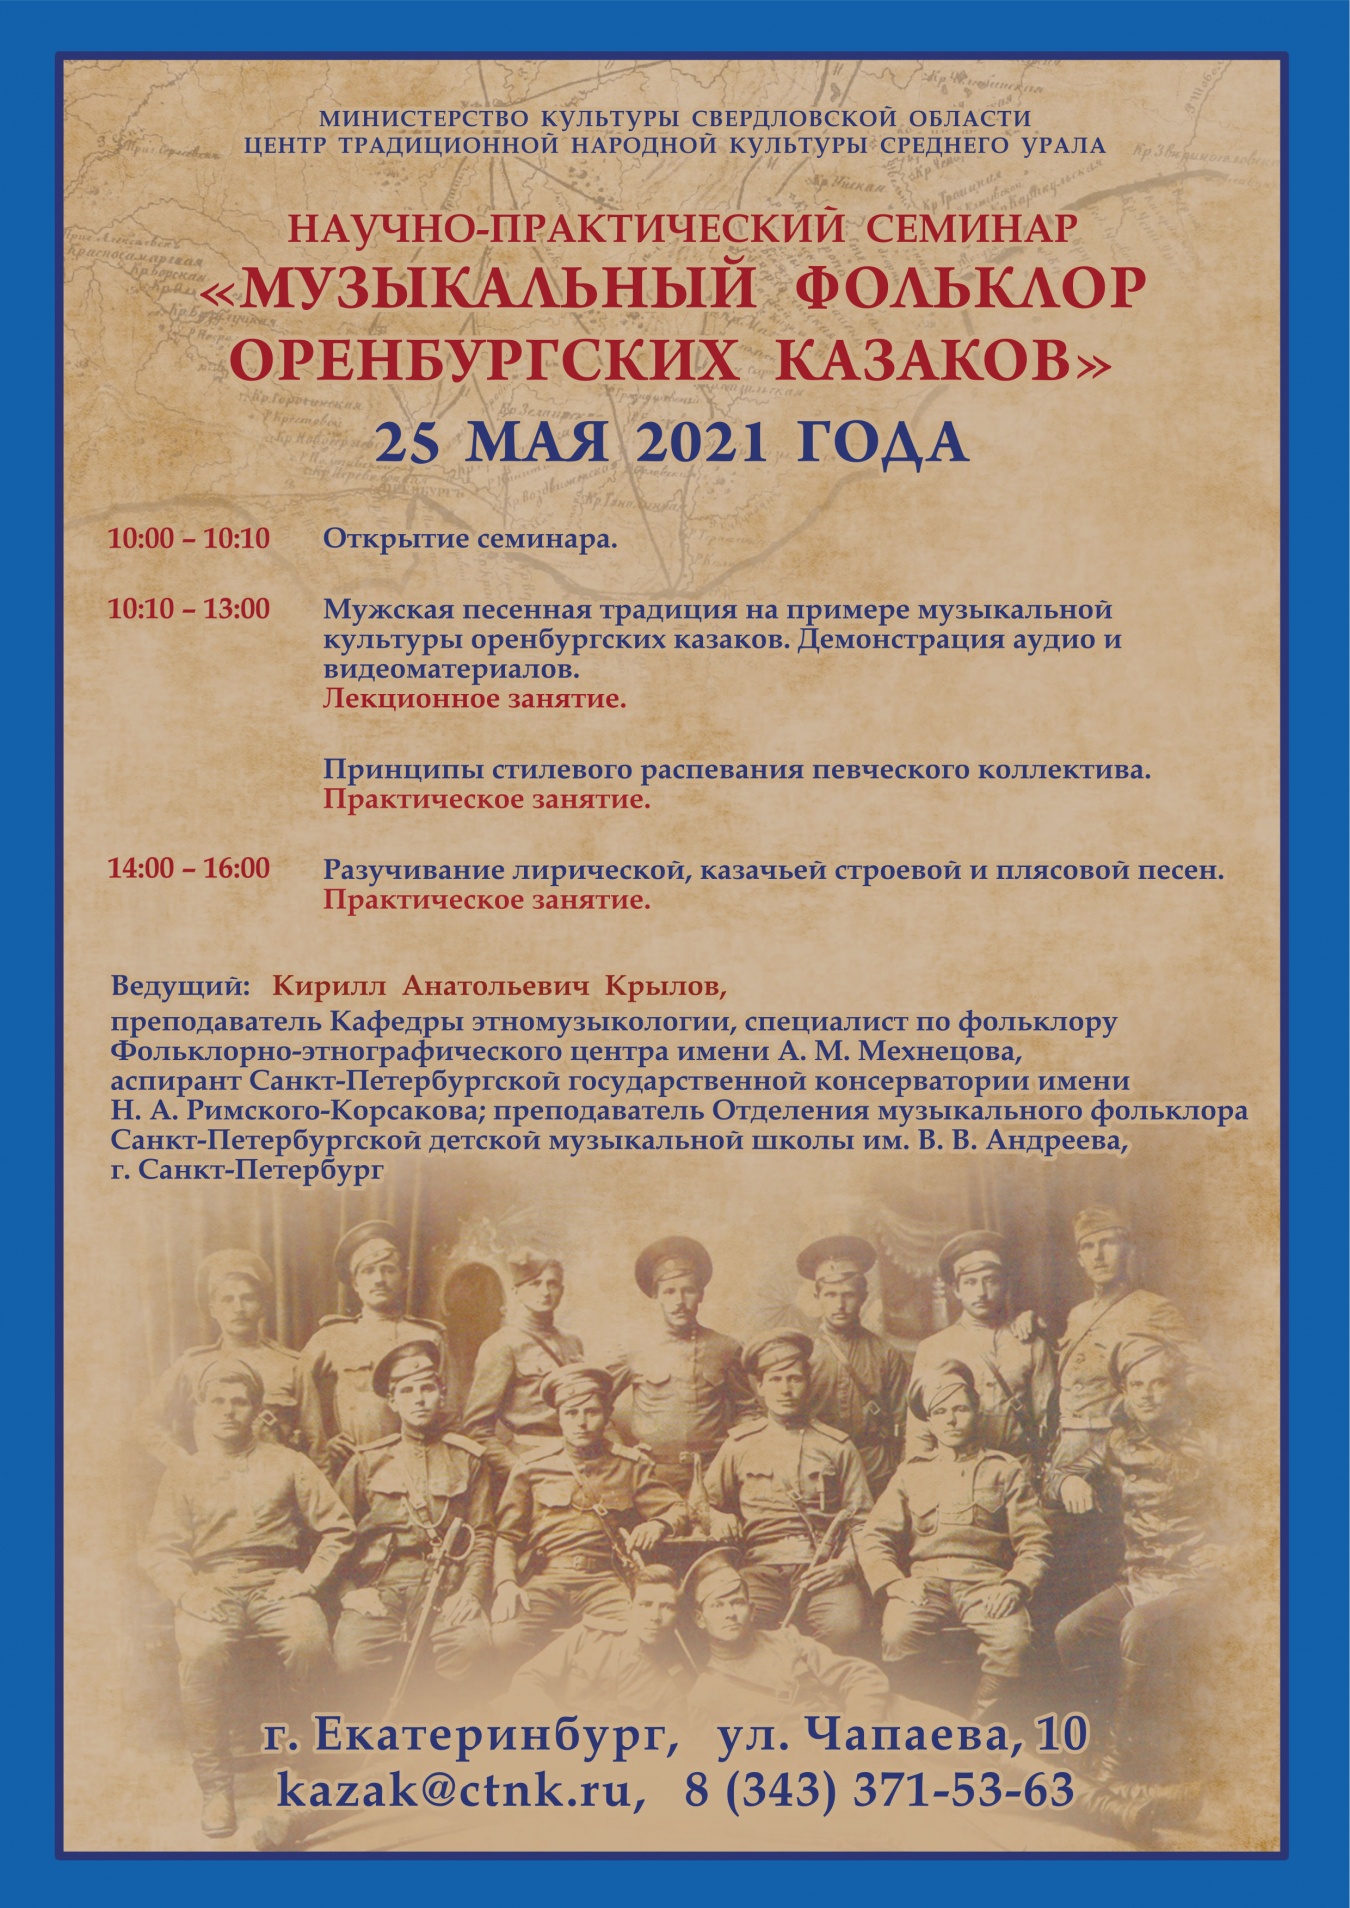 «Музыкальный фольклор оренбургских казаков»: В Екатеринбурге состоится научно-практический семинар